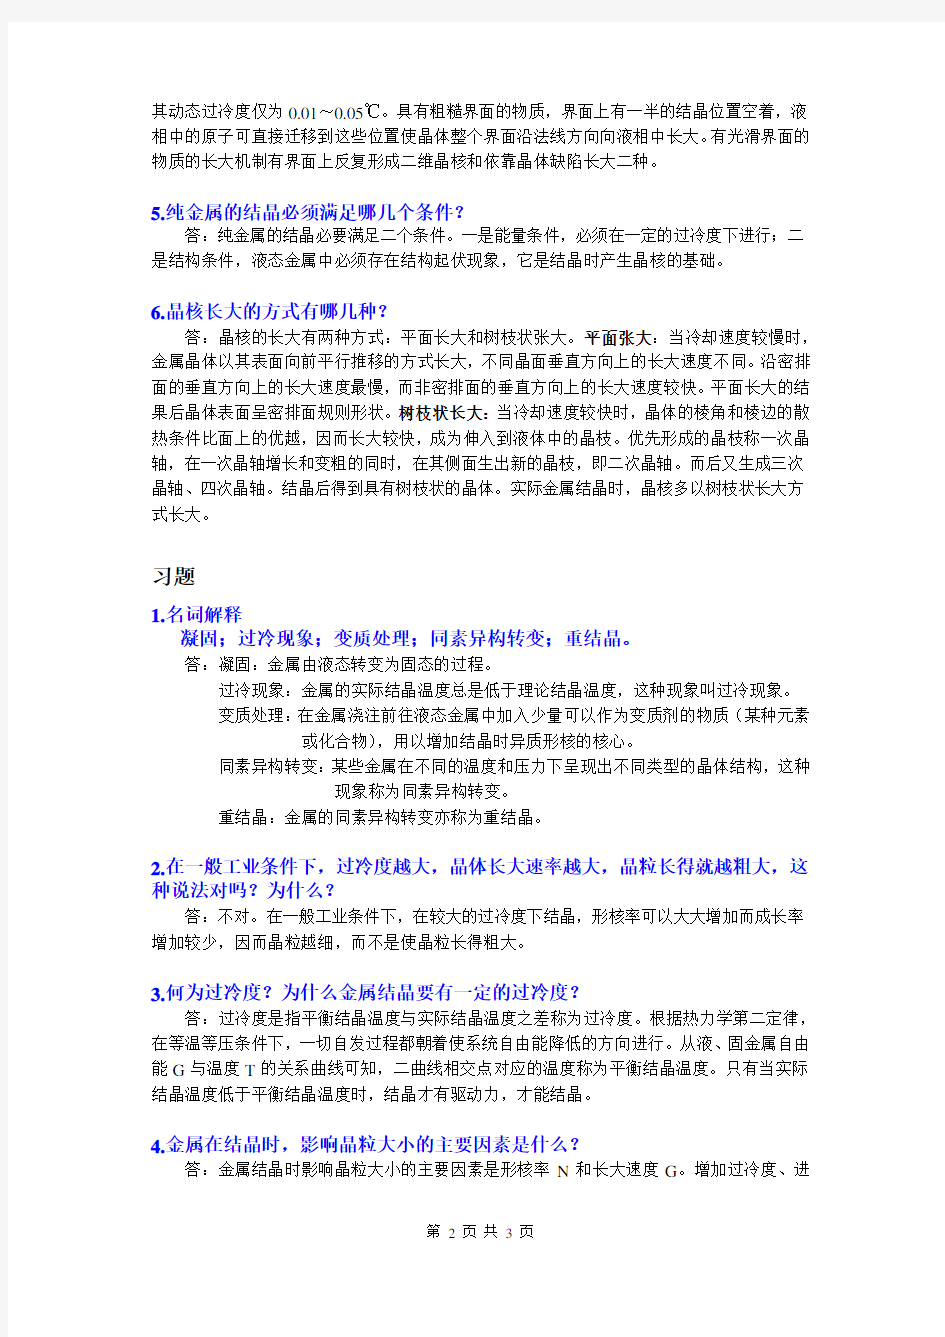 工程材料习题集参考答案(第三章)武汉理工大学,2014年